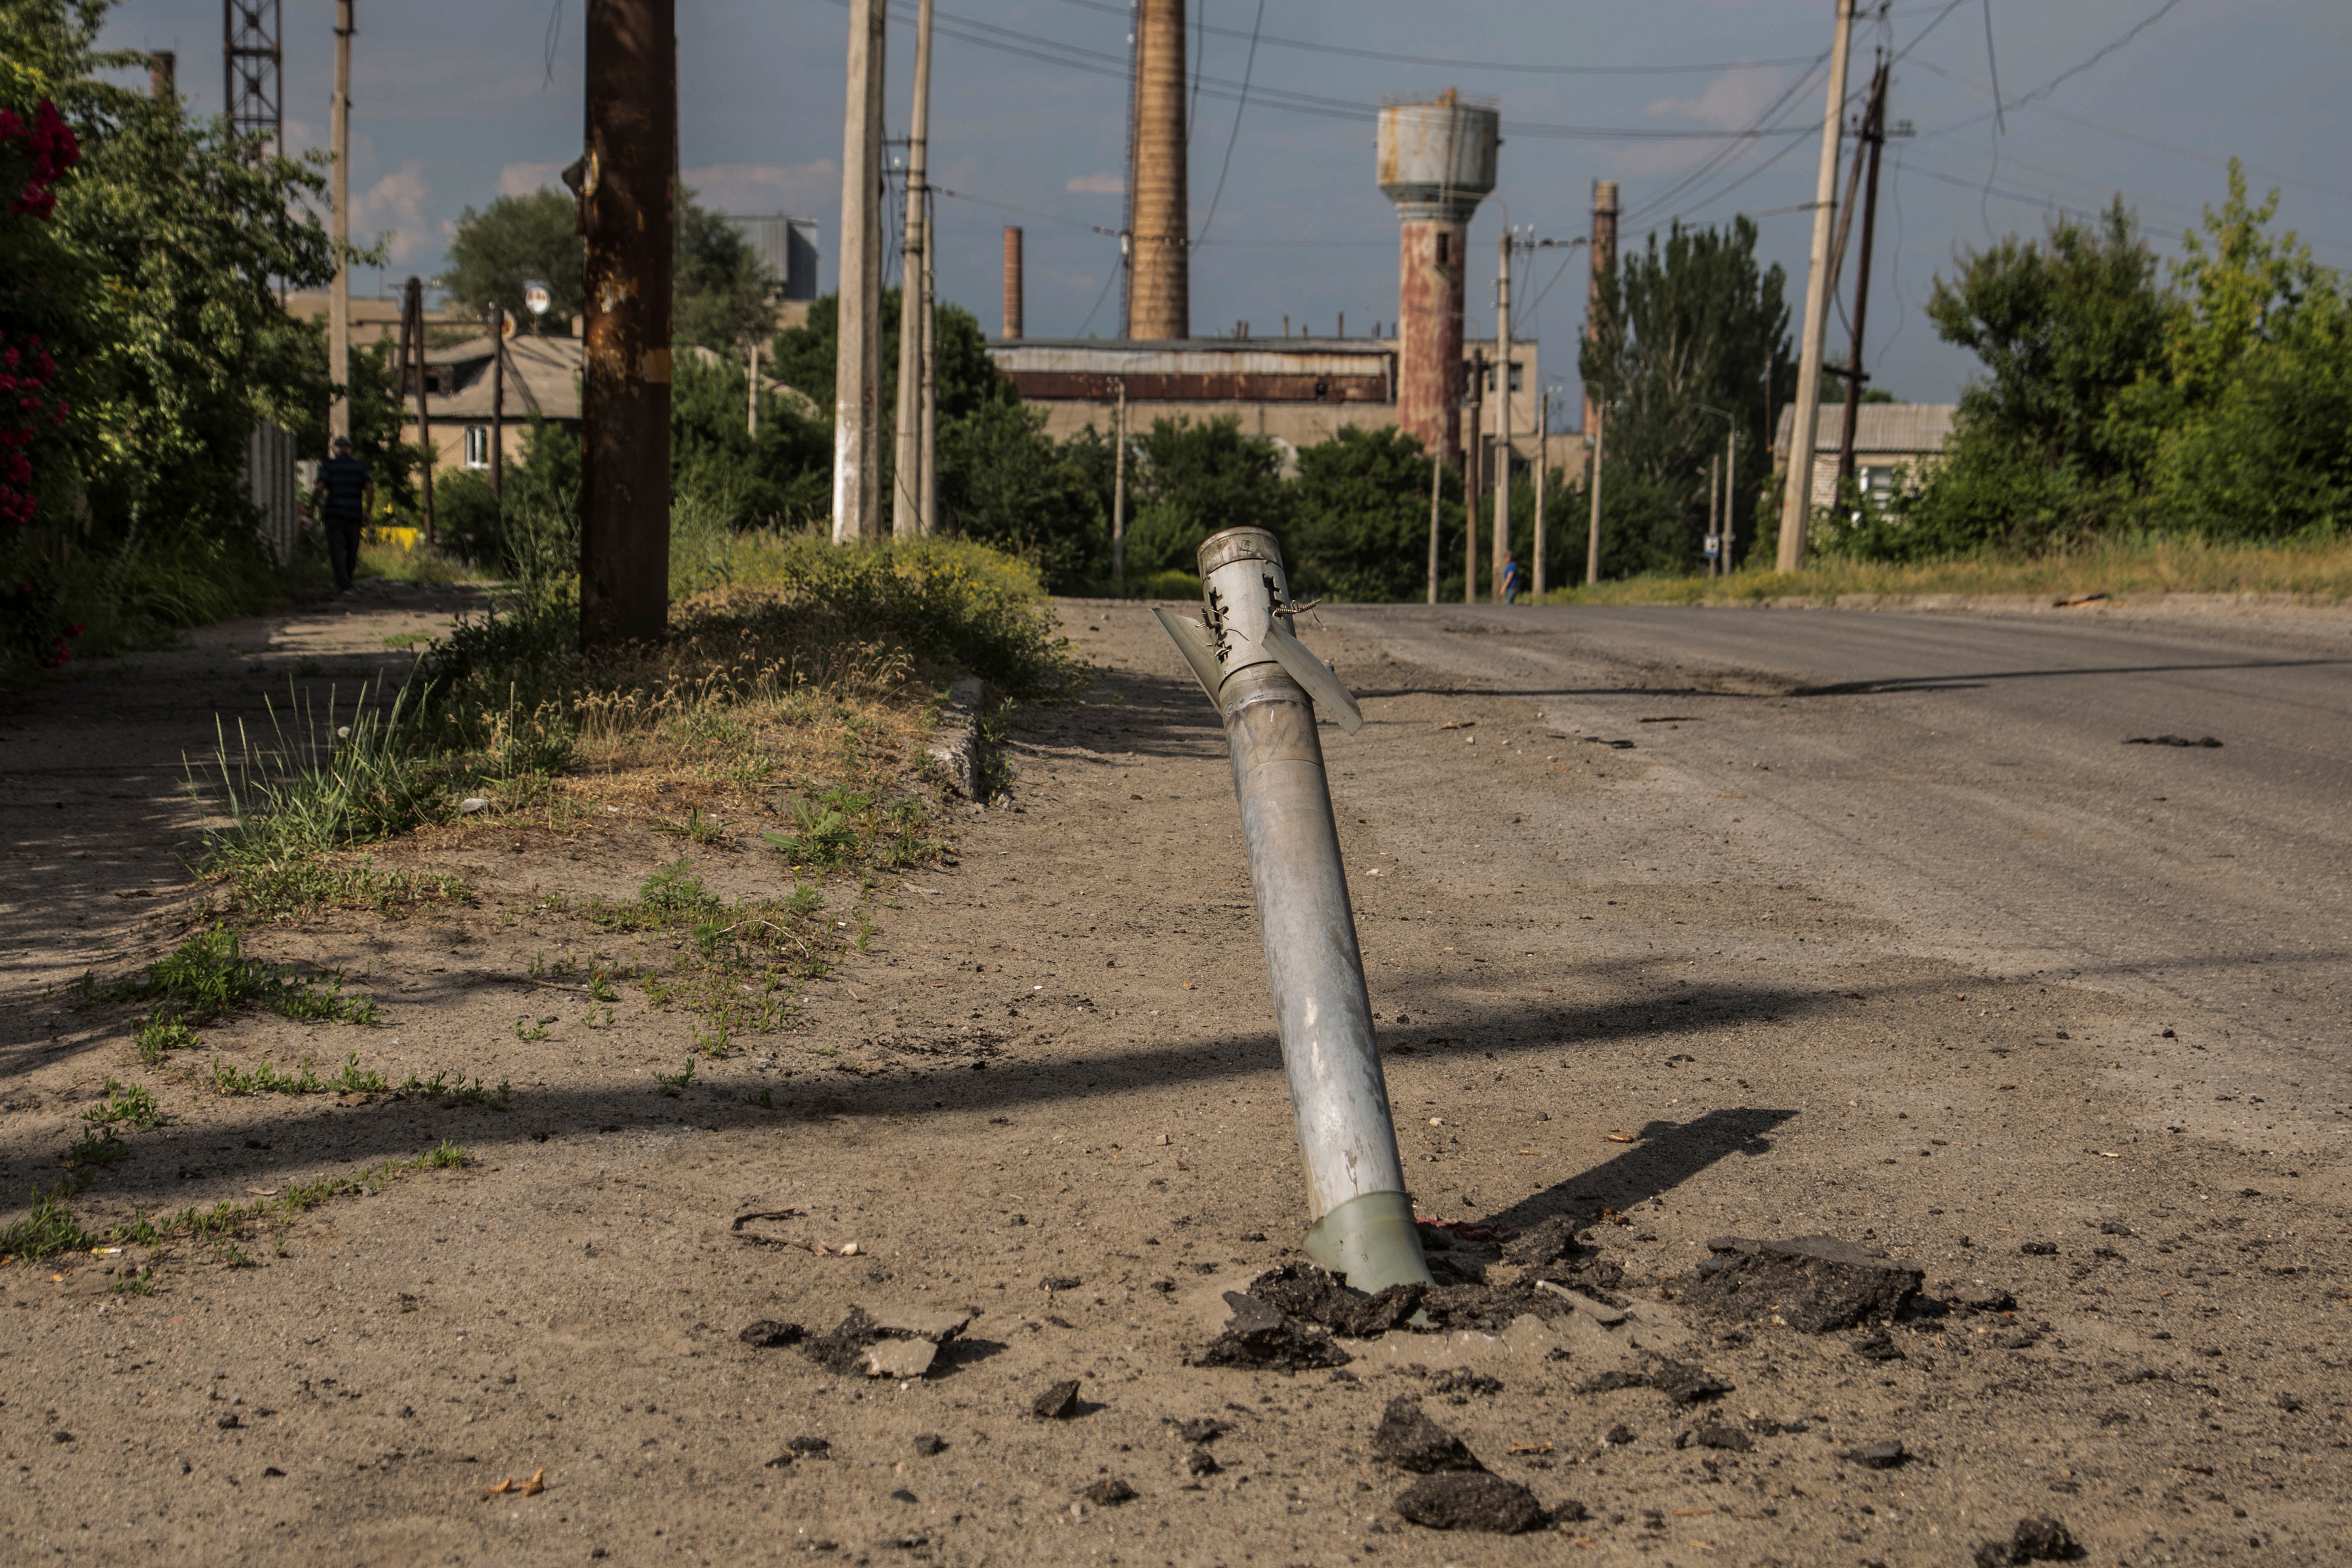 Un proyectil sin explotar de un sistema de lanzamiento de cohetes múltiples se ve atascado entre una calle en Lisychansk, región de Luhansk, Ucrania 17 de junio de 2022.  (REUTERS/Oleksandr Ratushniak)